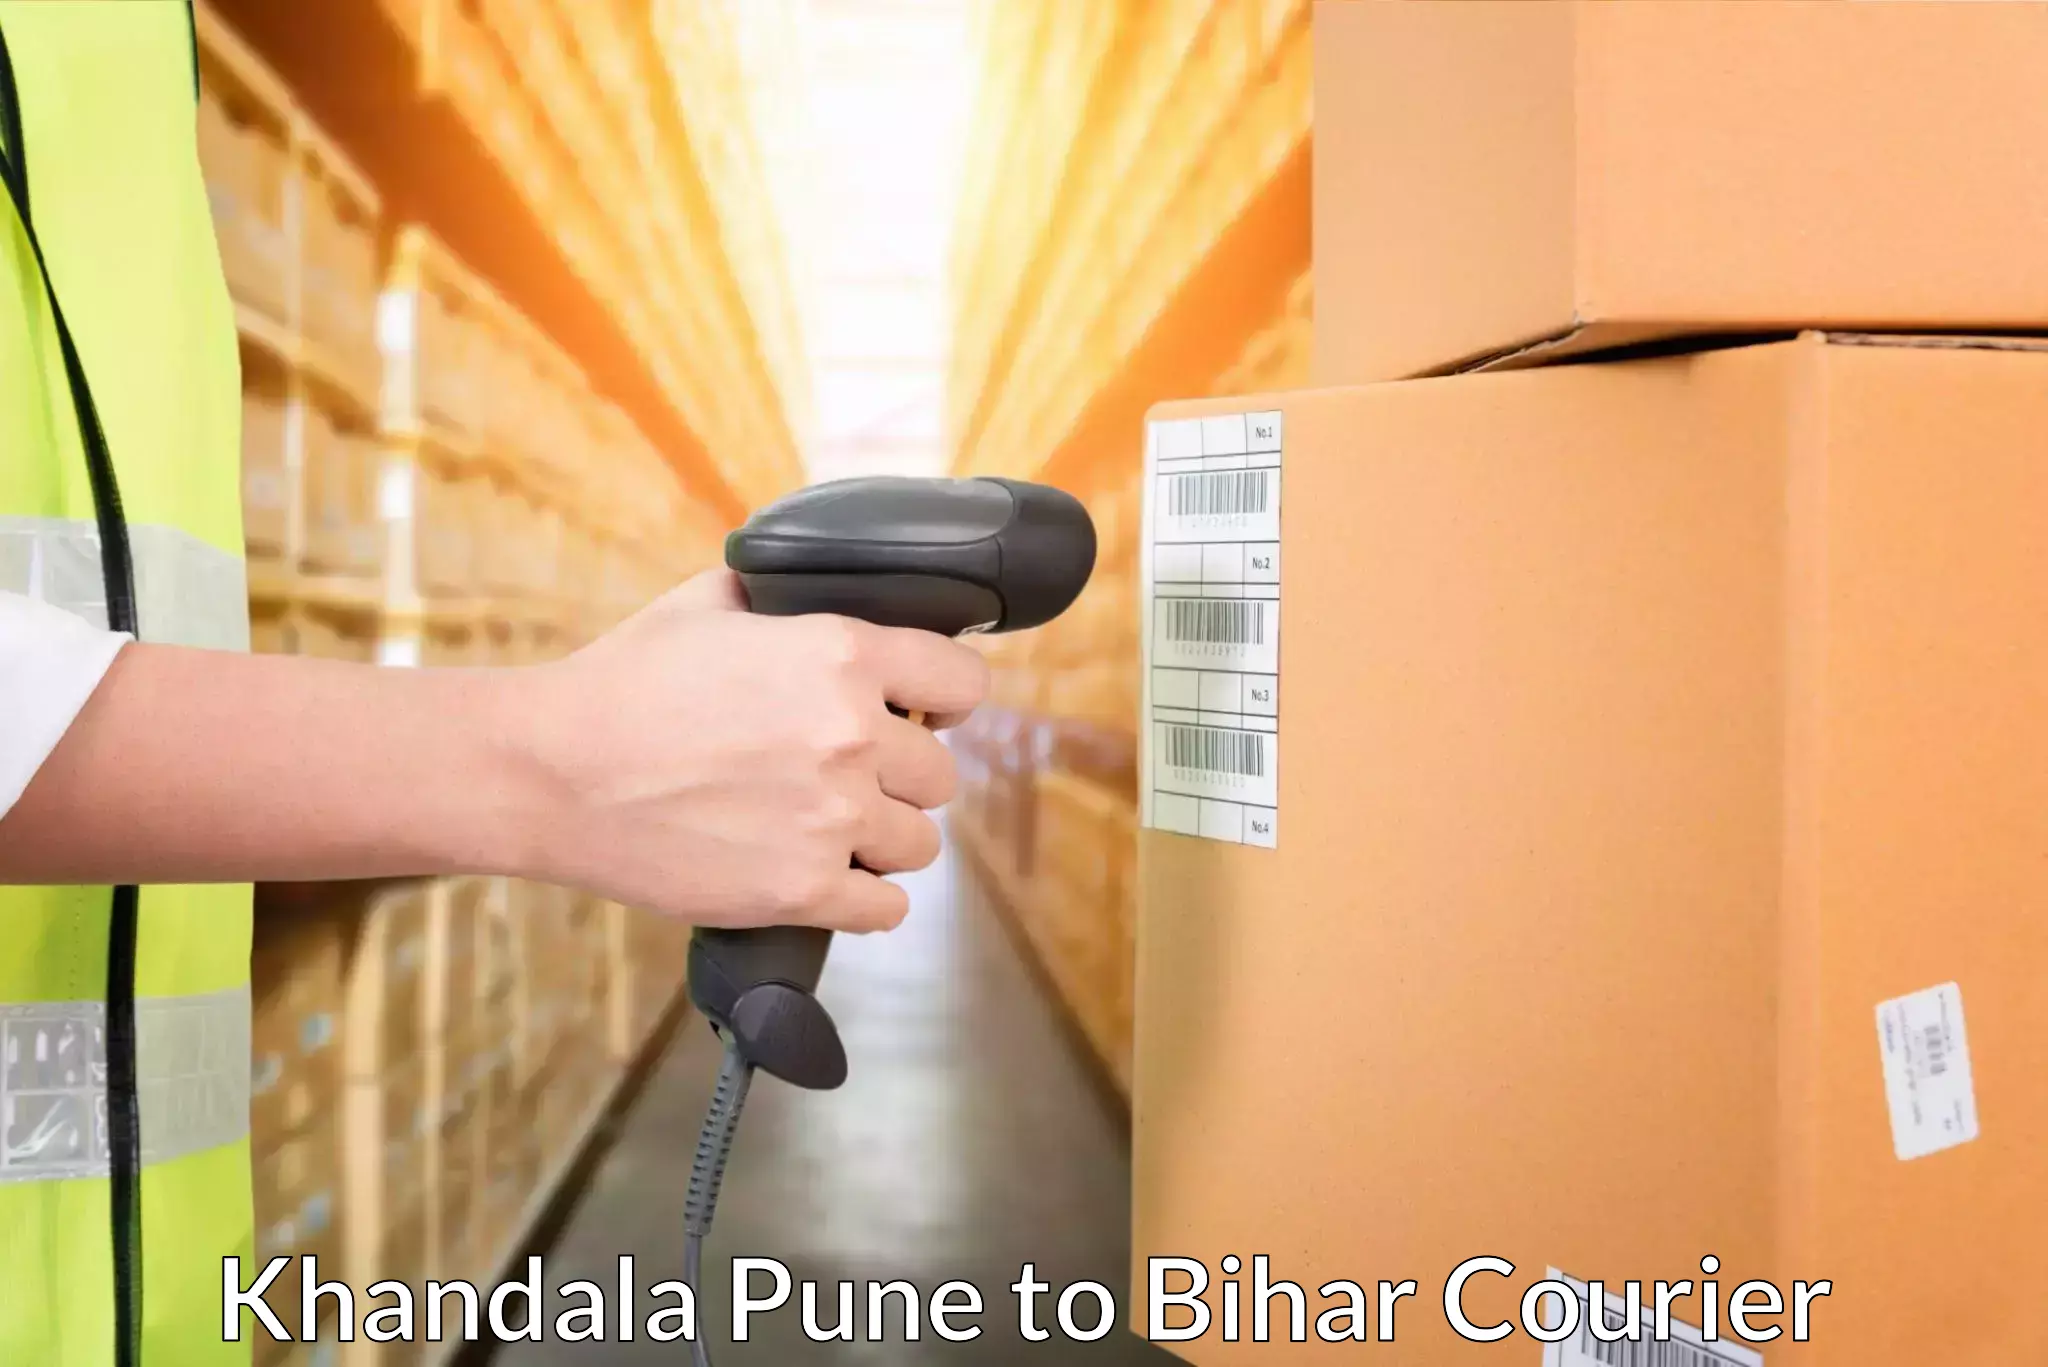 Seamless shipping service Khandala Pune to Baisi